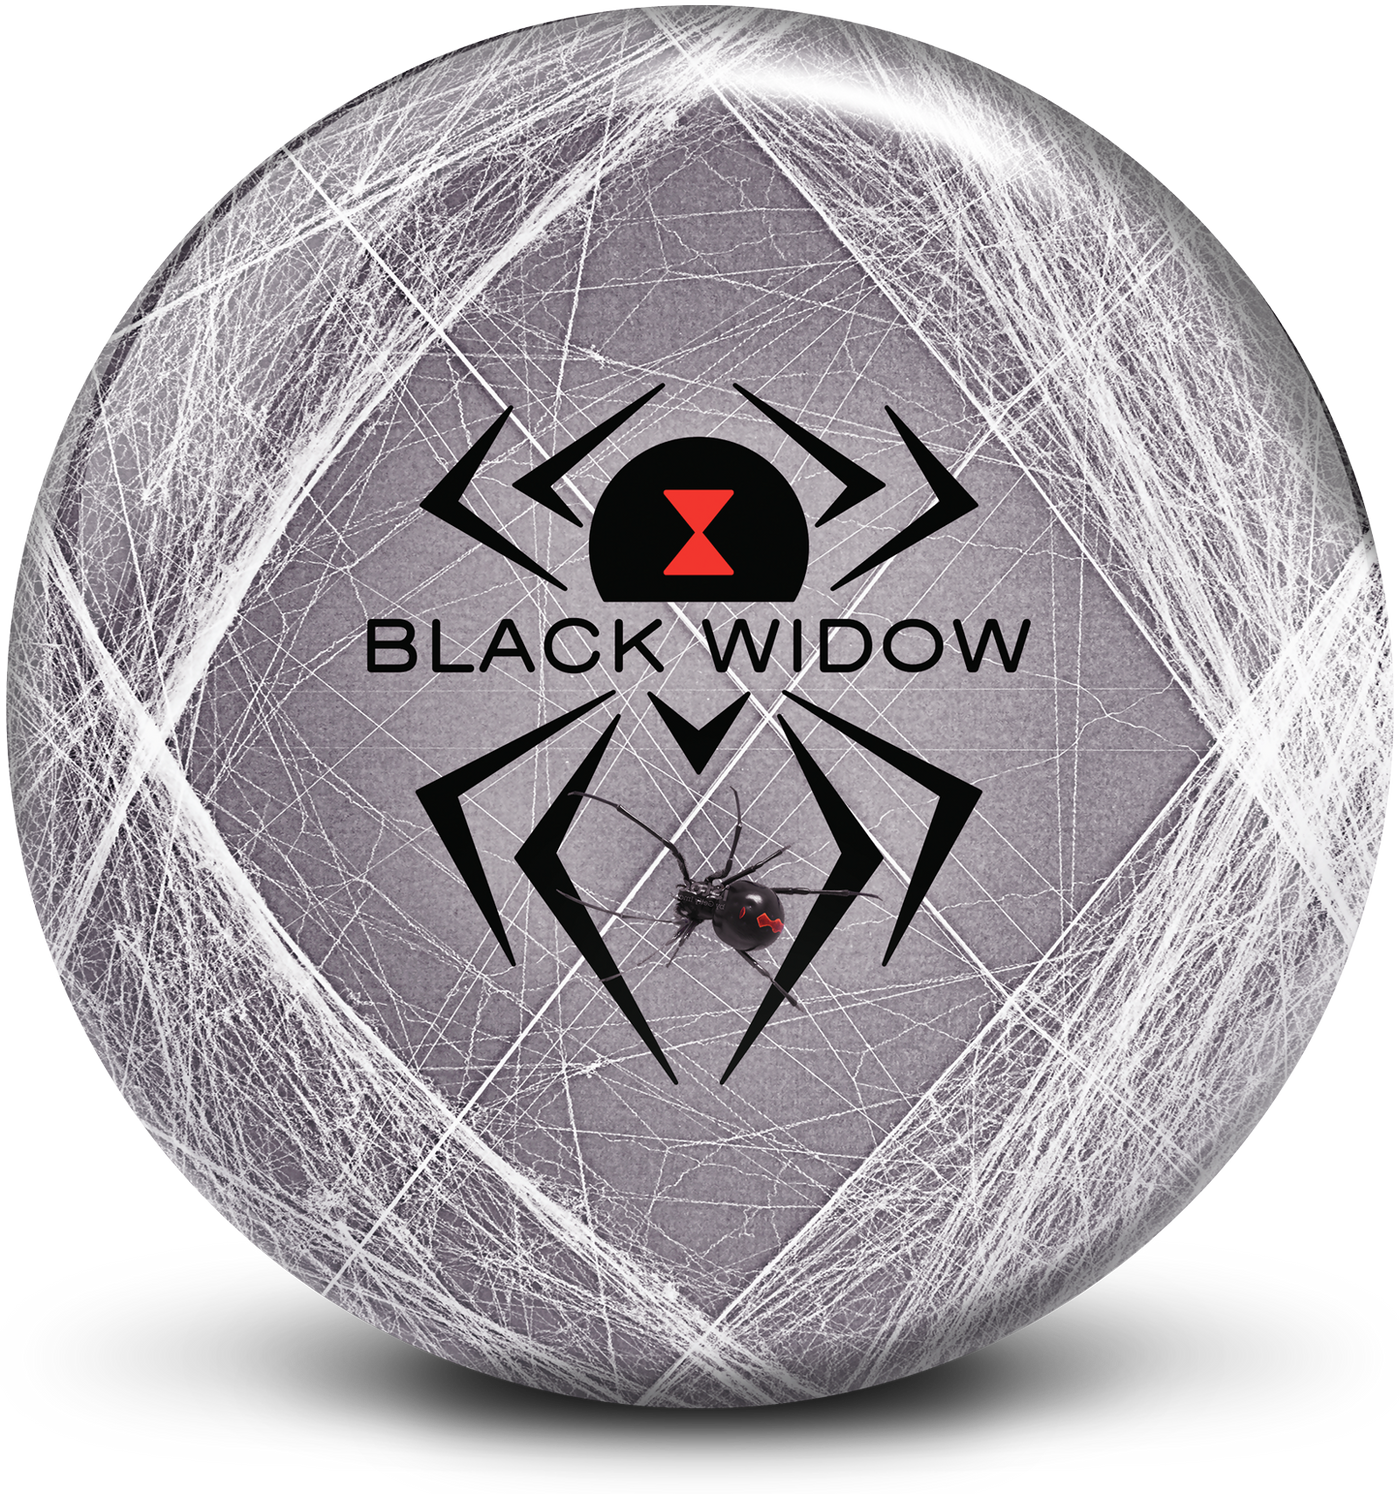 Black Widow Viz-A-Ball bowling ball front